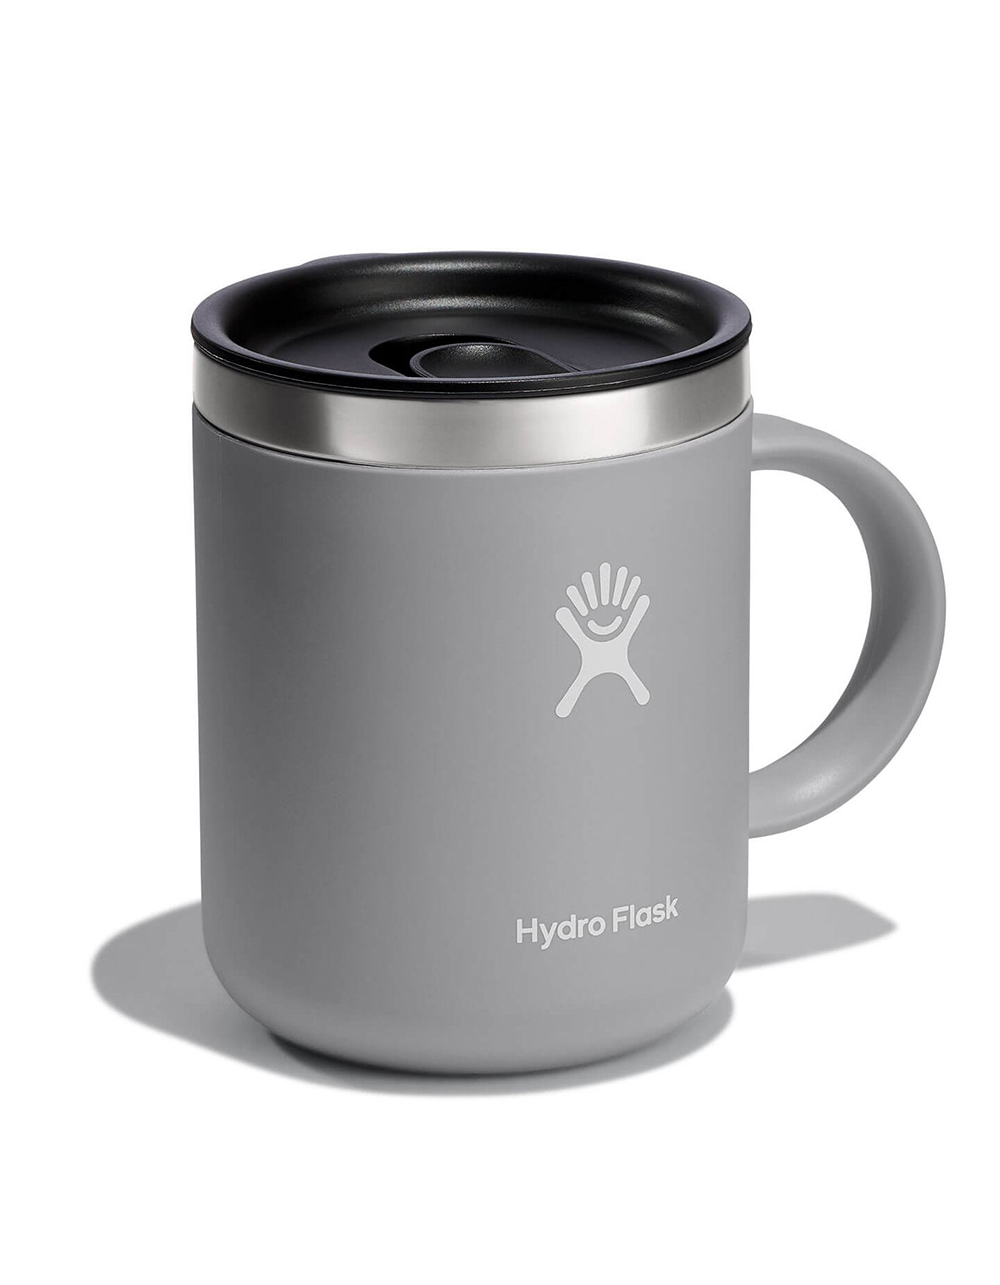 Hydro Flask 12 oz Coffee Mug (Birch)